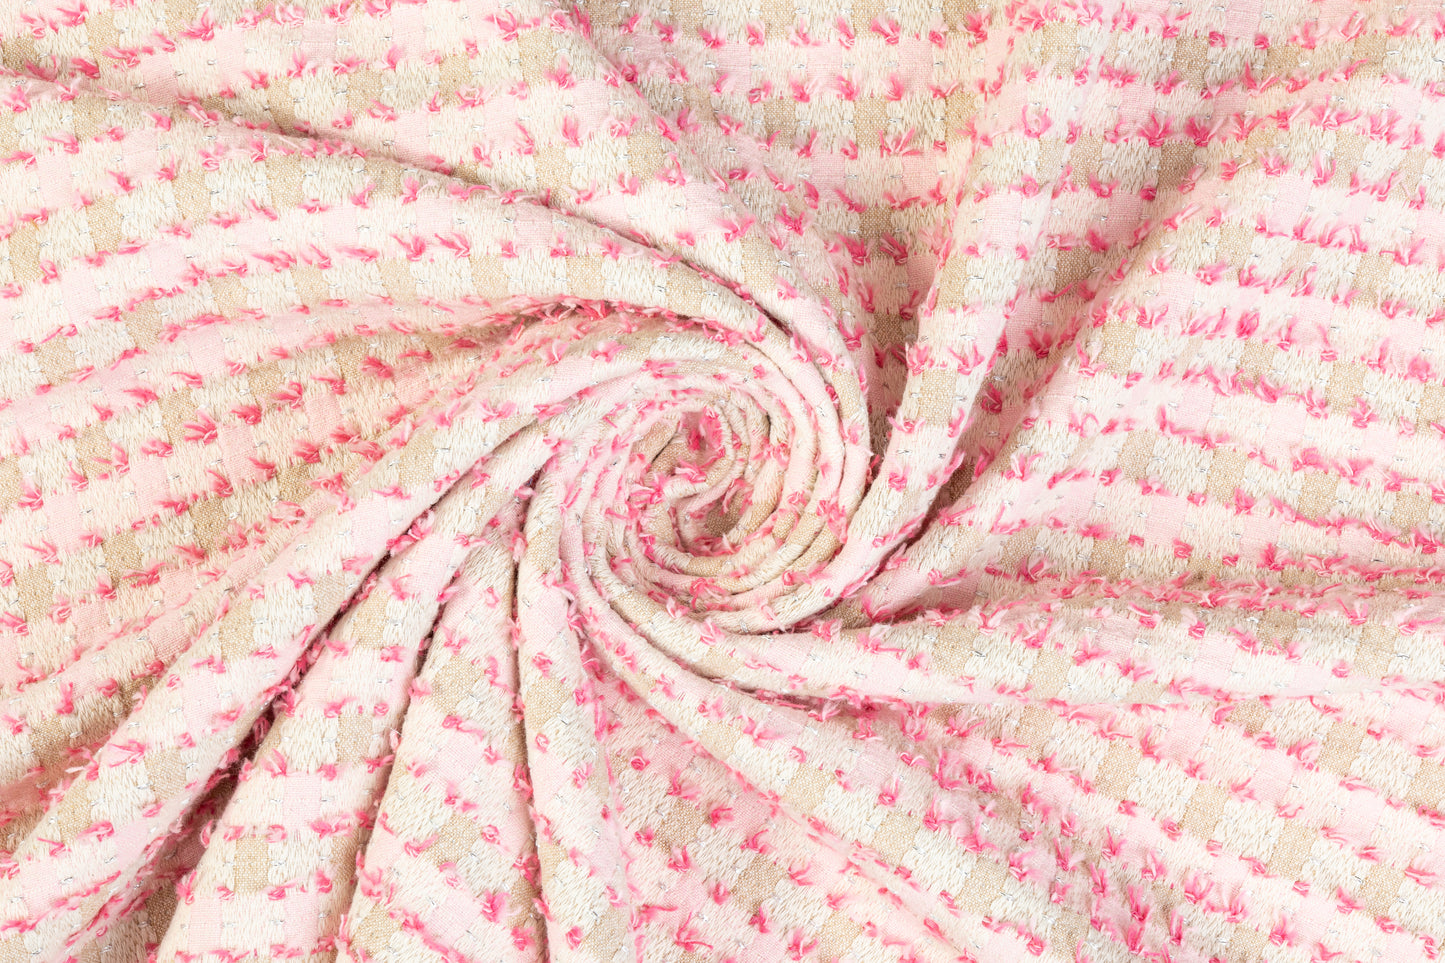 Metallic Cotton Tweed - Pink and Beige